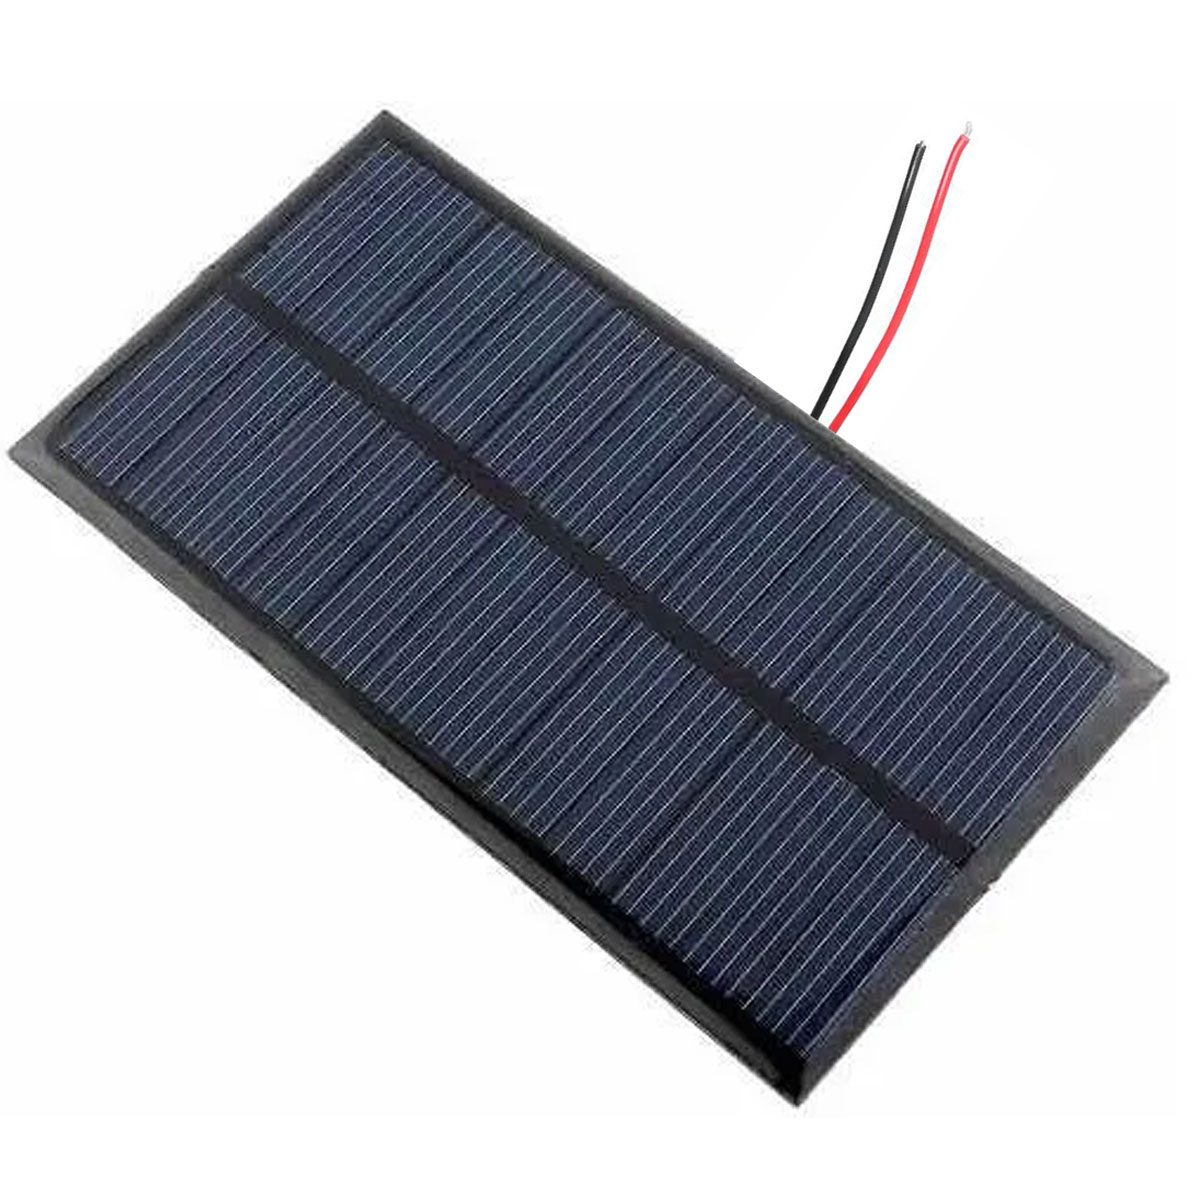 Mini Placa Solar 12v 1.5w com Cabos Soldados p/ Ionizador de Piscina